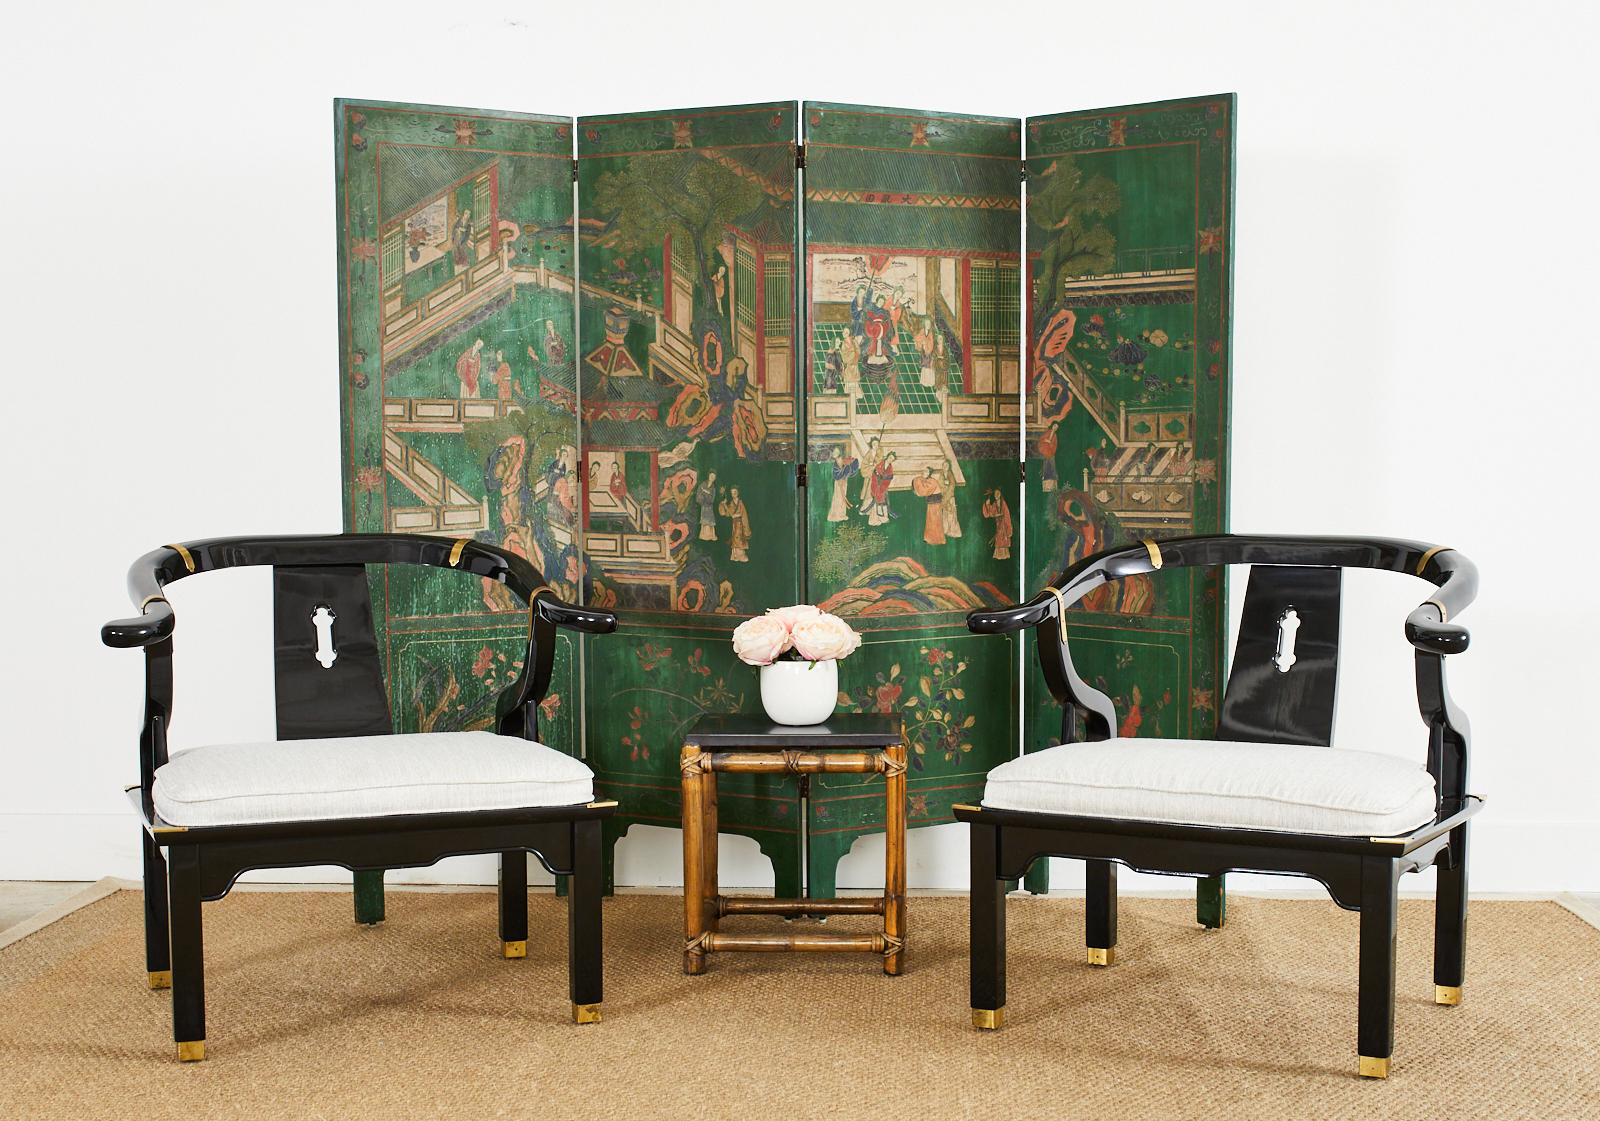 Opulentes Paar großer chinesischer Hufeisen-Loungesessel im Ming-Stil, hergestellt von Century. Ursprünglich von James Mont entworfen, verkörpern diese Stühle seinen überdrehten, dramatischen Stil der Jahrhundertmitte mit asiatischem Einschlag.